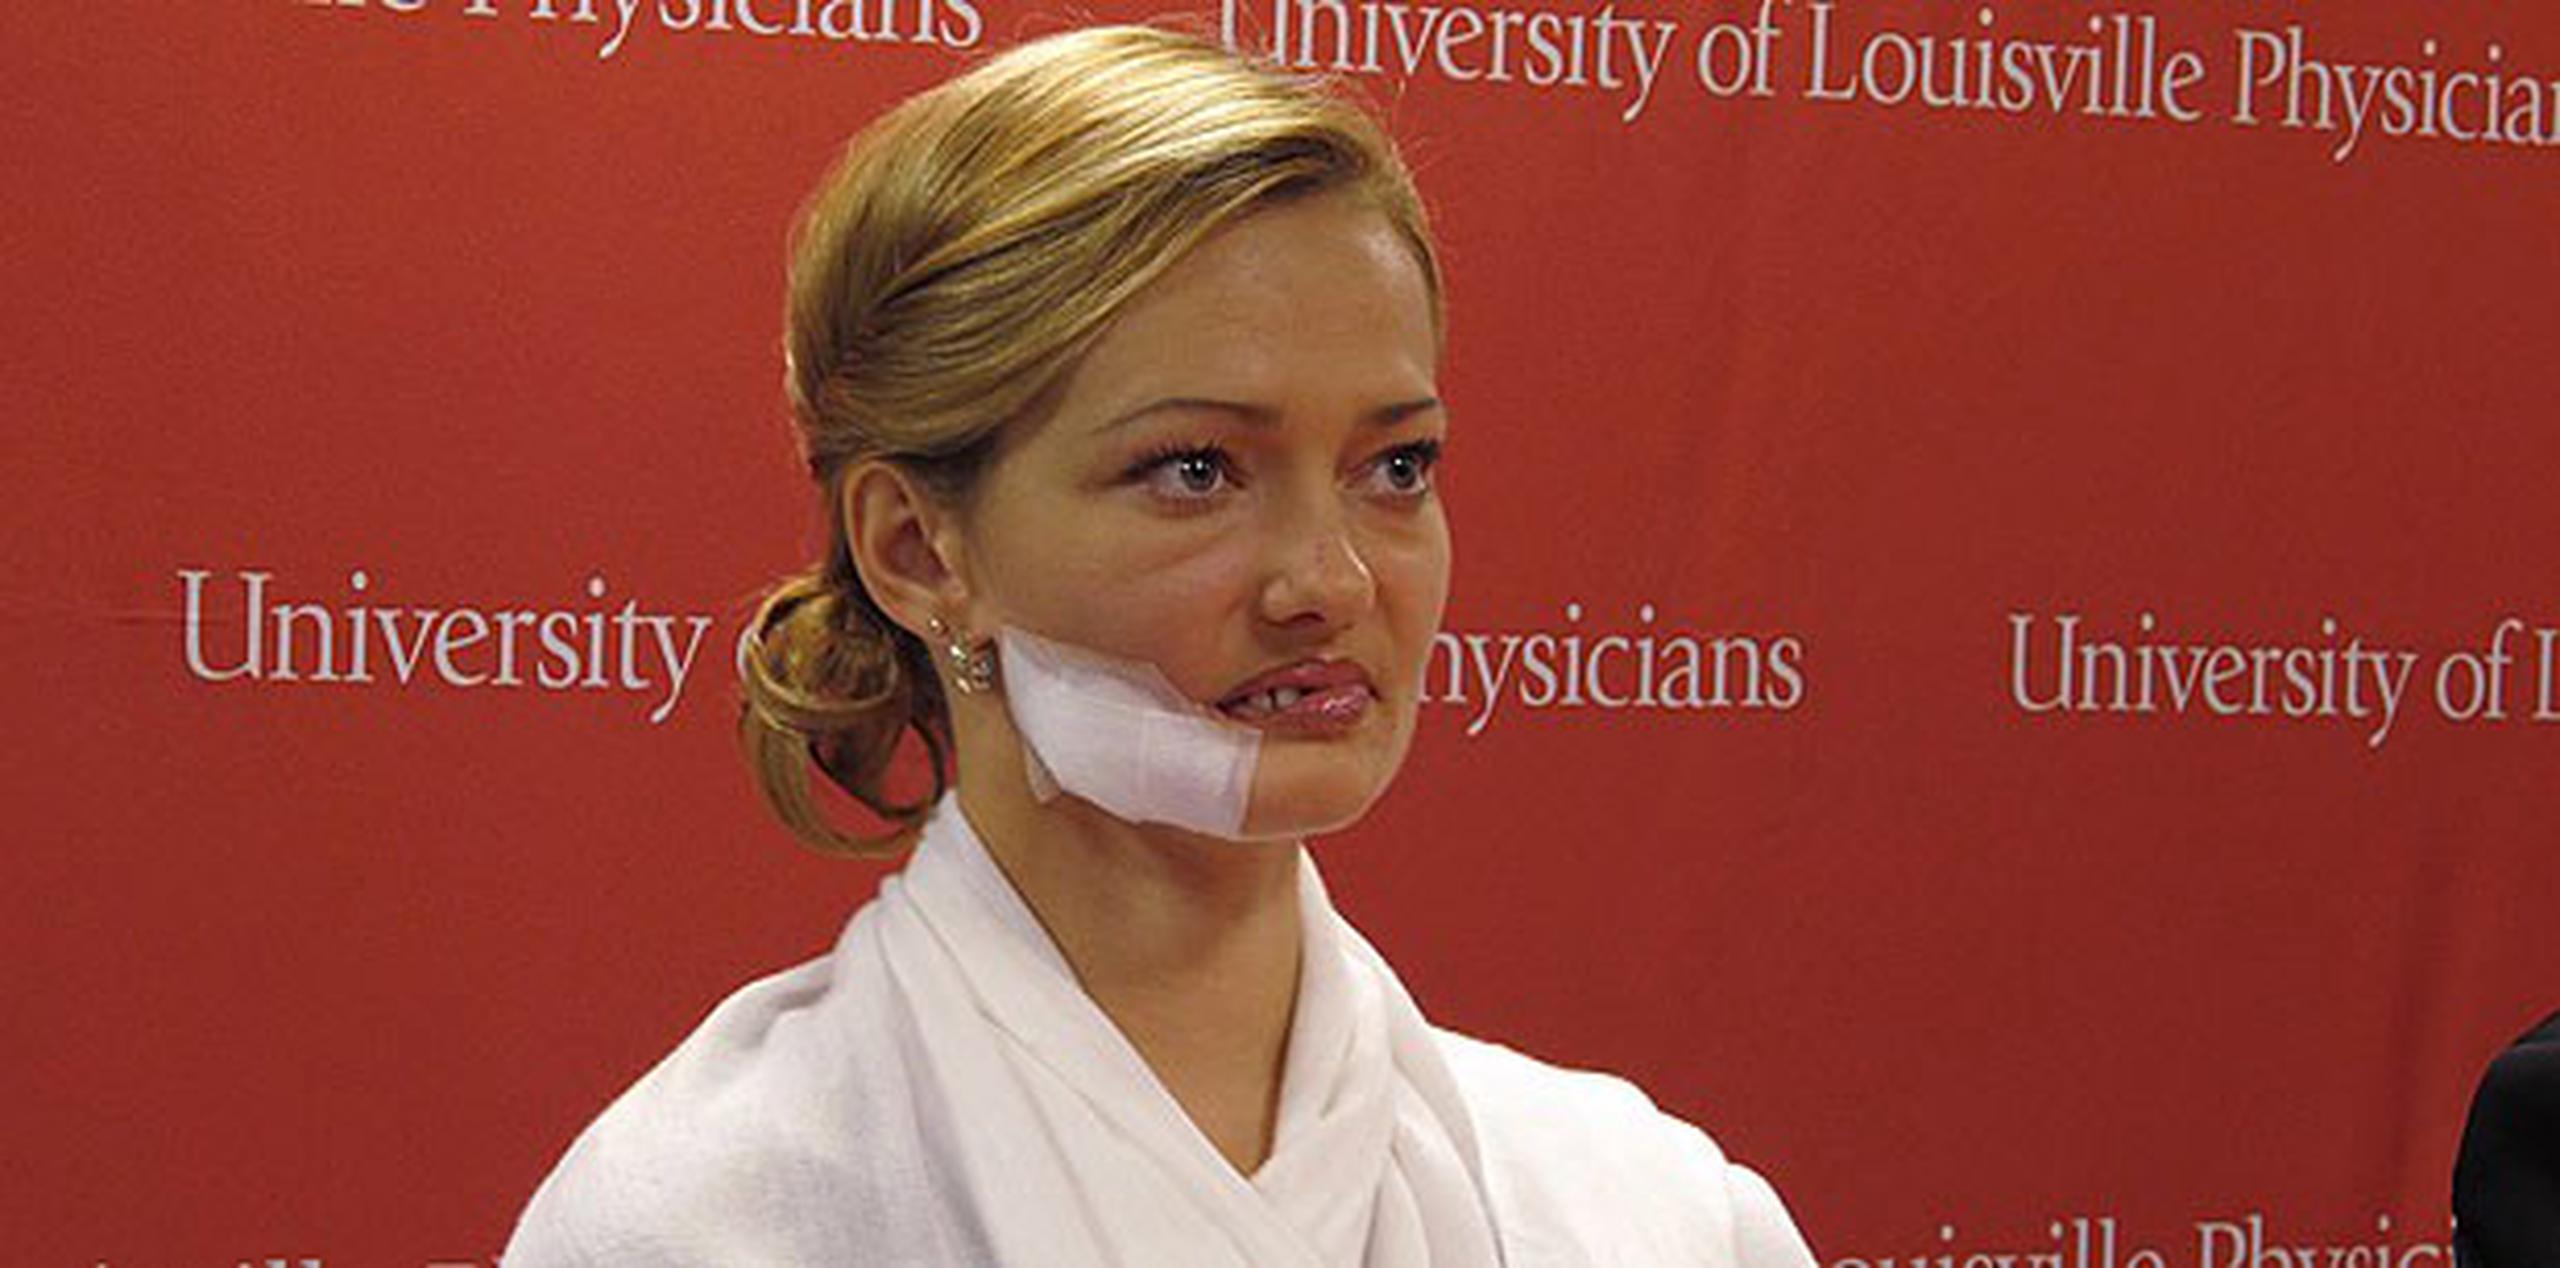 Lessya Kotelevskaya sufrió el rechazo de su esposo y la comunidad cuando su rostro quedó mutilado. (AP Photo/Bruce Schreiner)